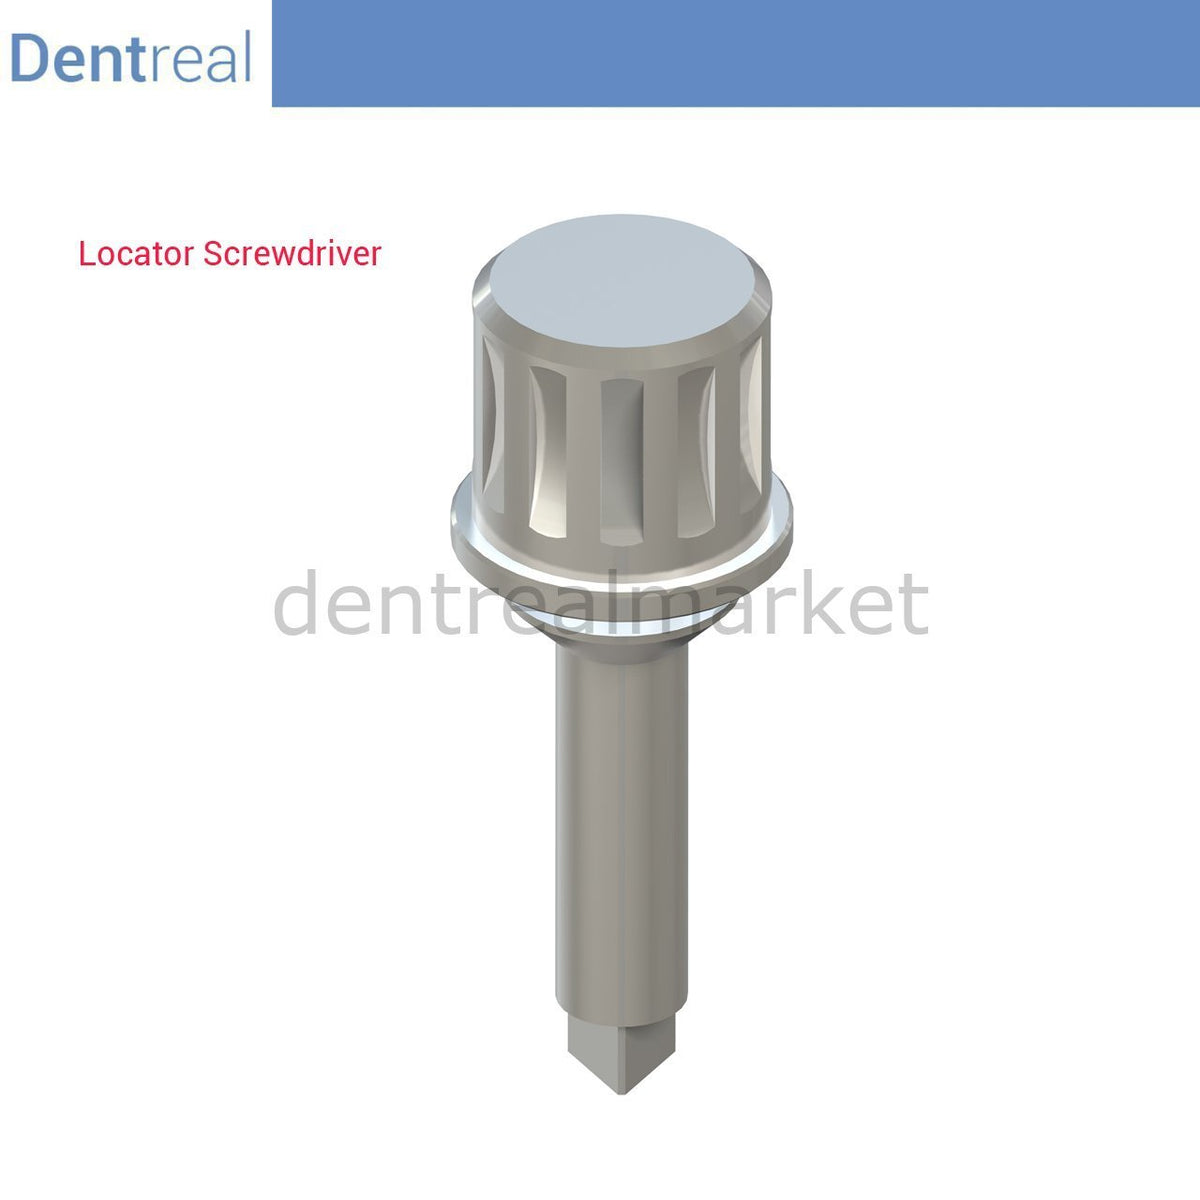 DentrealStore - Dentreal Screwdriver Torque Wrench for Locator